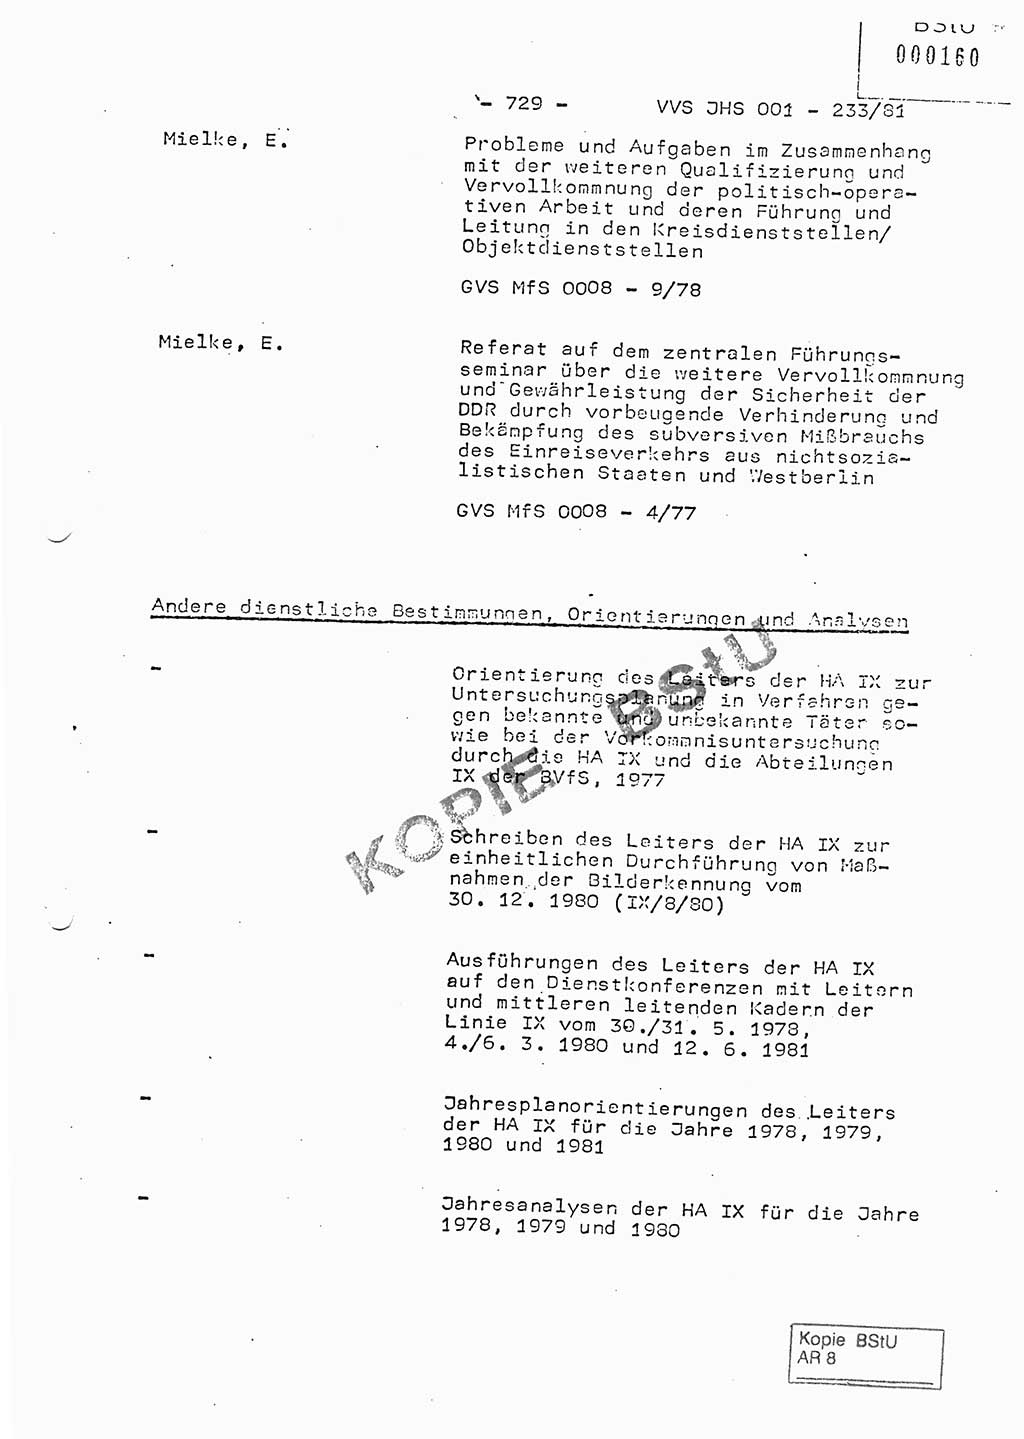 Dissertation Oberstleutnant Horst Zank (JHS), Oberstleutnant Dr. Karl-Heinz Knoblauch (JHS), Oberstleutnant Gustav-Adolf Kowalewski (HA Ⅸ), Oberstleutnant Wolfgang Plötner (HA Ⅸ), Ministerium für Staatssicherheit (MfS) [Deutsche Demokratische Republik (DDR)], Juristische Hochschule (JHS), Vertrauliche Verschlußsache (VVS) o001-233/81, Potsdam 1981, Blatt 729 (Diss. MfS DDR JHS VVS o001-233/81 1981, Bl. 729)